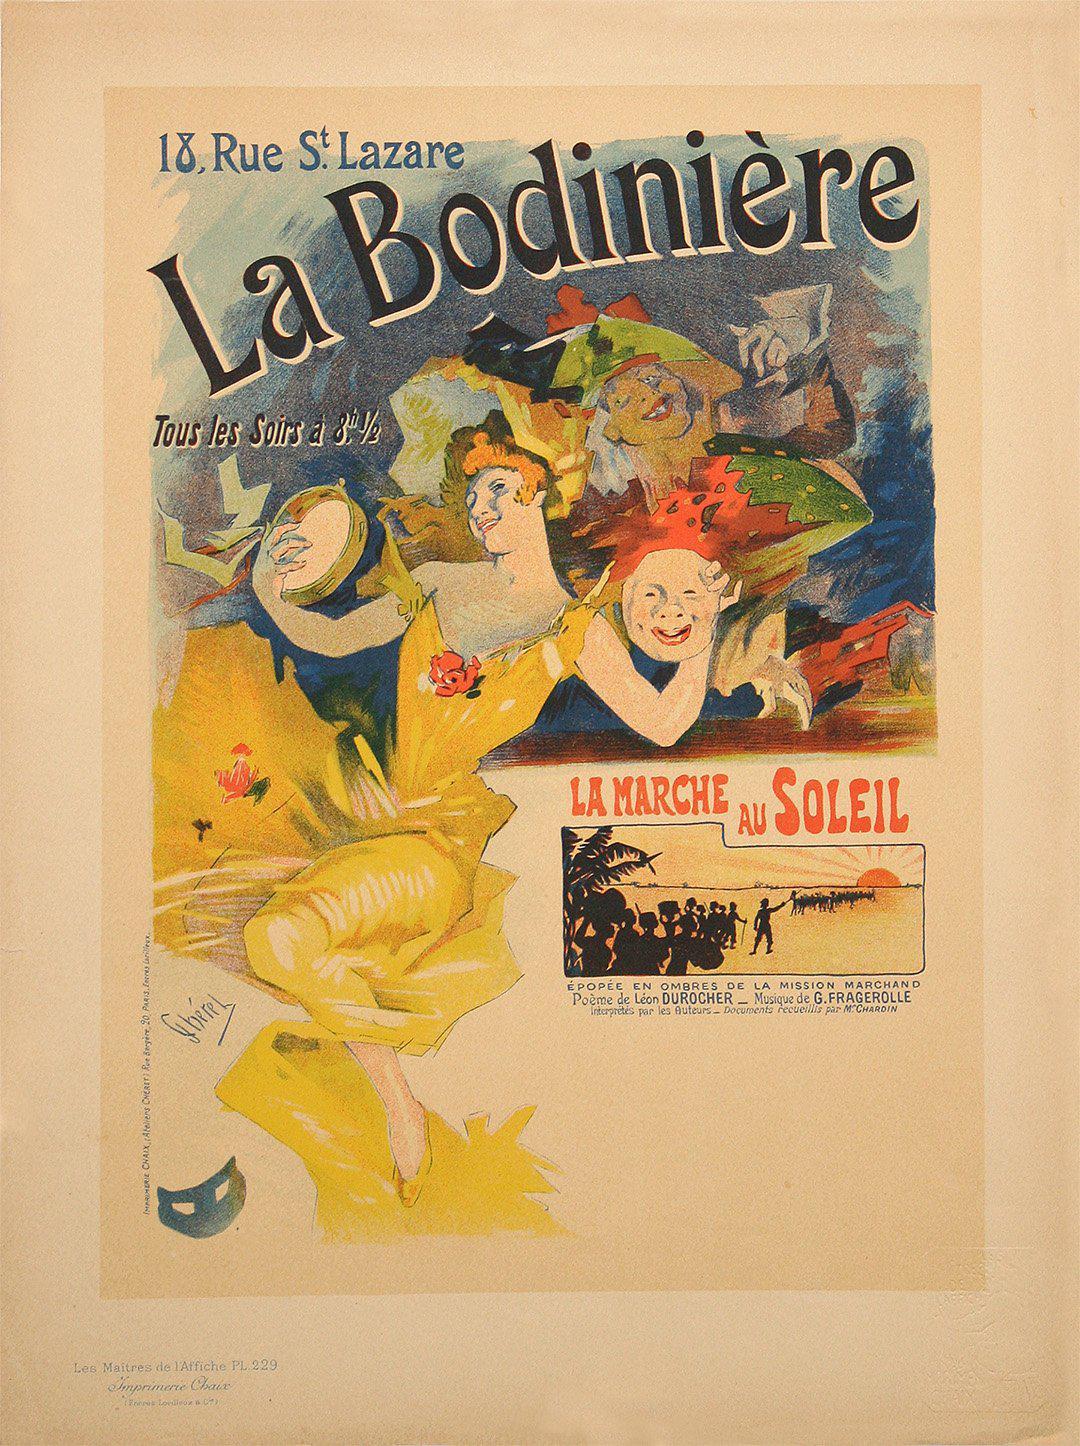 Original Vintage Maitre de l'Affiche Pl 229 La Bodiniere by Jules Cheret